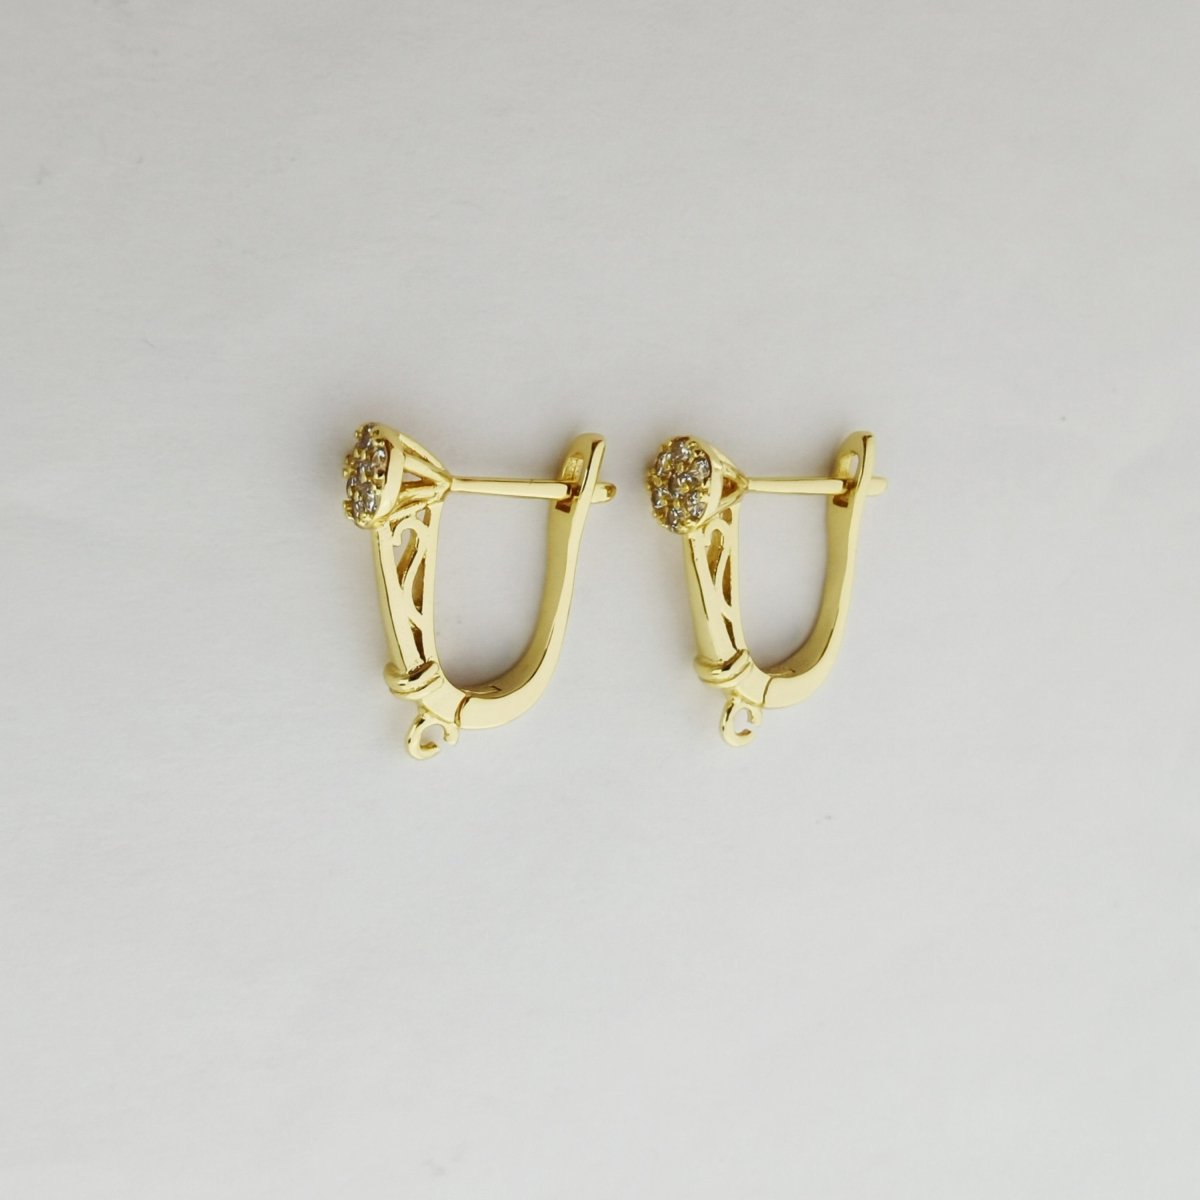 24k Vermeil Gold Earrings, Open Link, Latch Back Earring, Flower Earrings, DIY Earrings, Everyday Wear Earrings, Cubic Zirconia Earrings, K-742 - DLUXCA